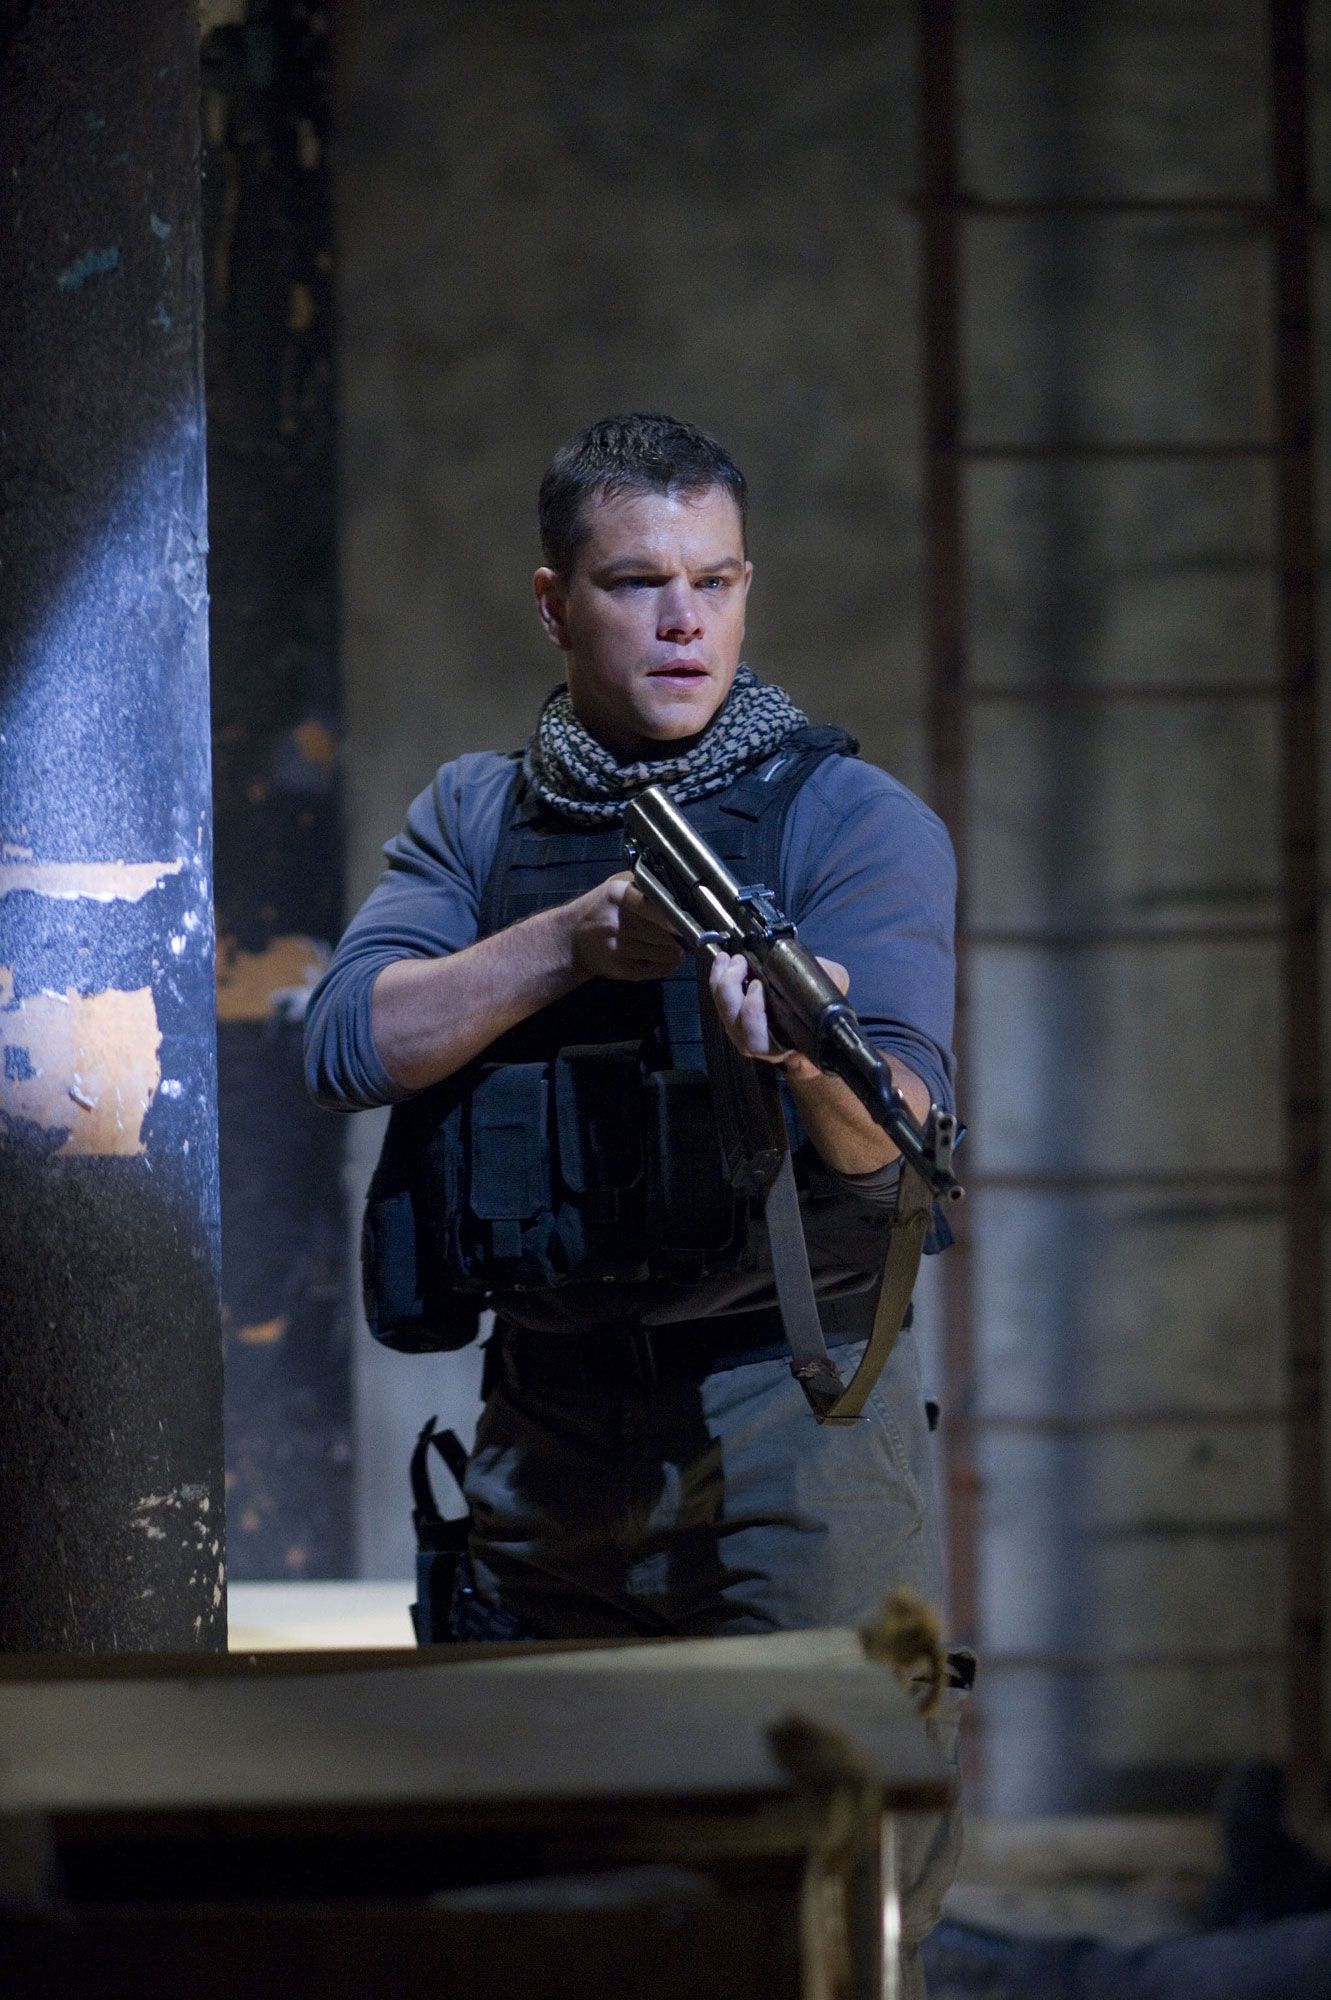 Matt Damon stars as Chief Warrant Officer Roy Miller